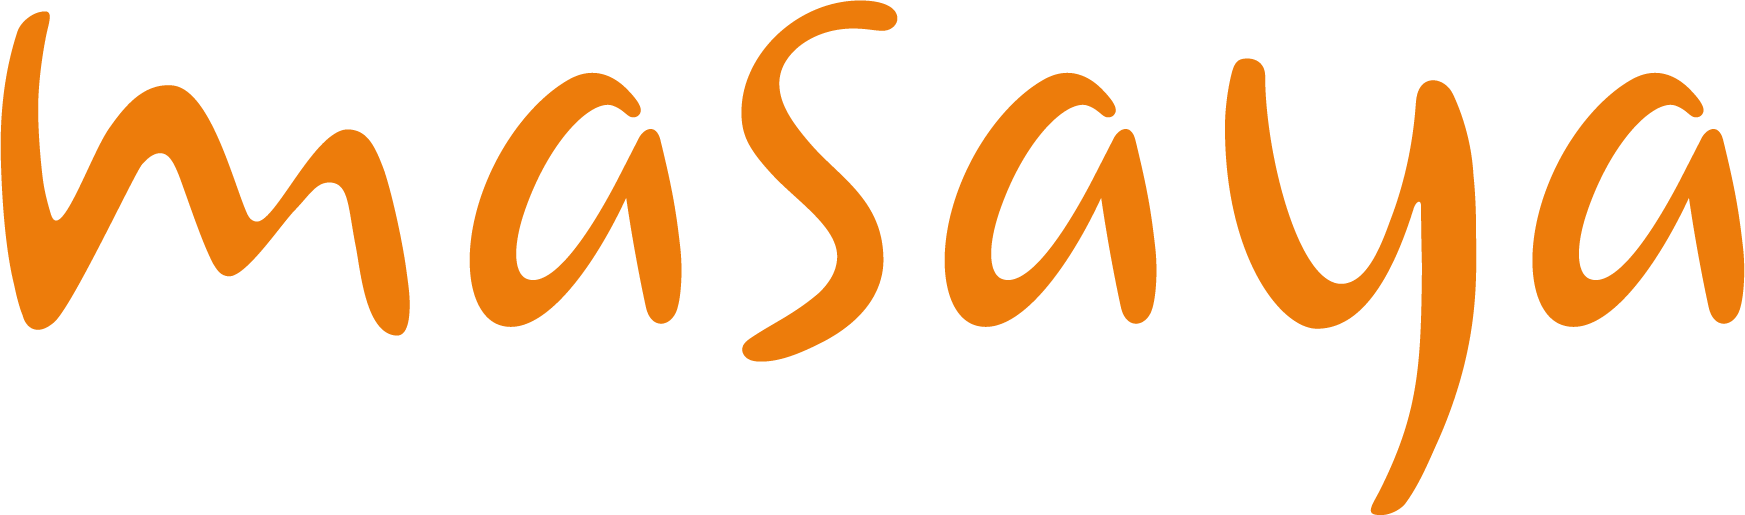 Logos Masaya